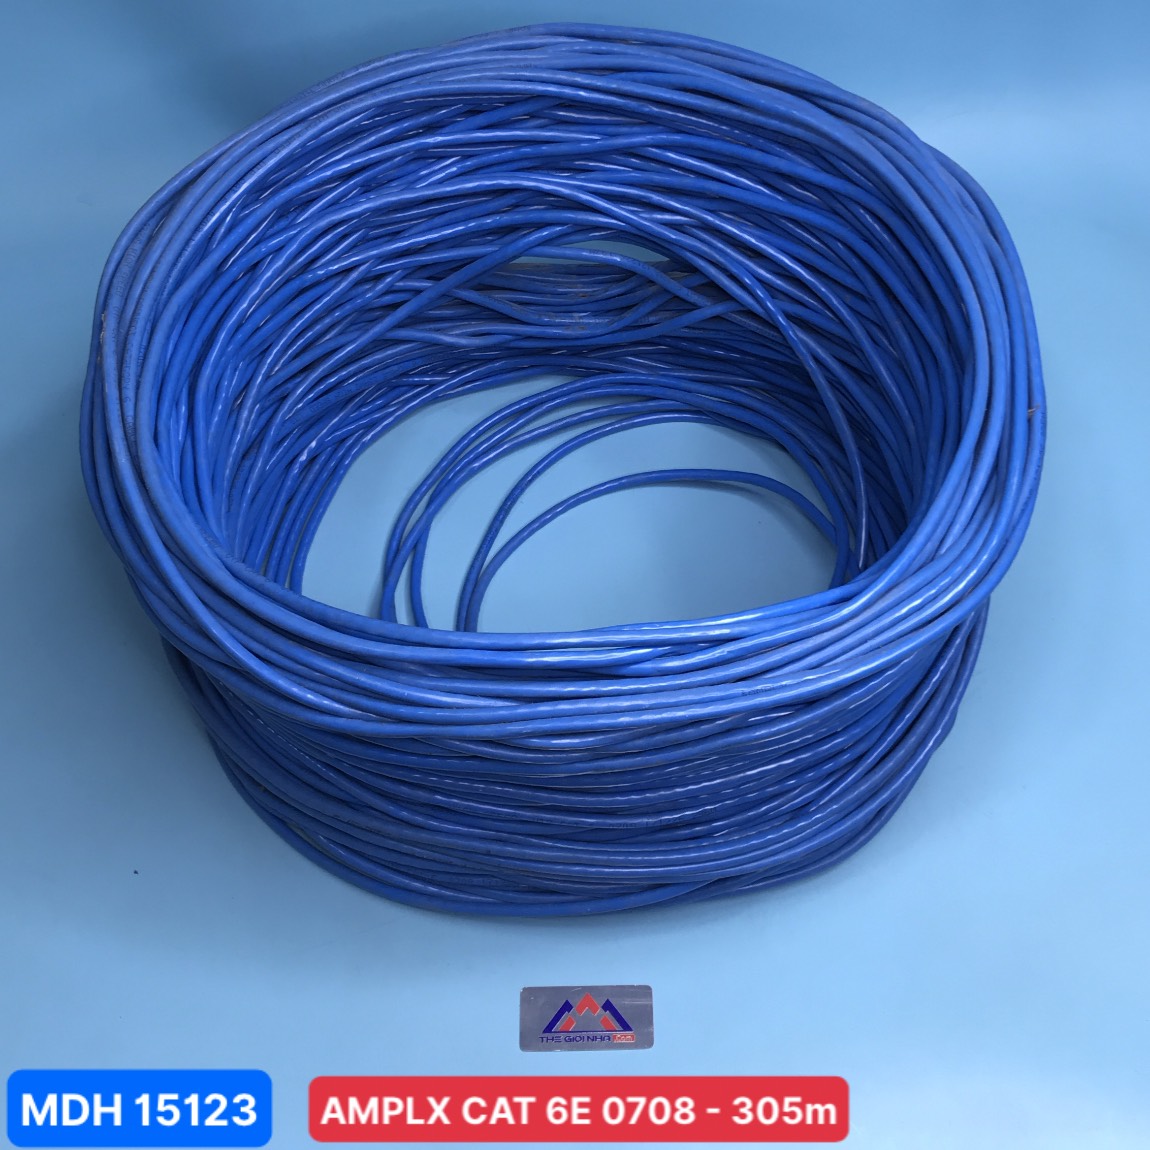 Dây cáp mạng AMPLX CAT 6E 0708, cuộn dài 305M (màu xanh)